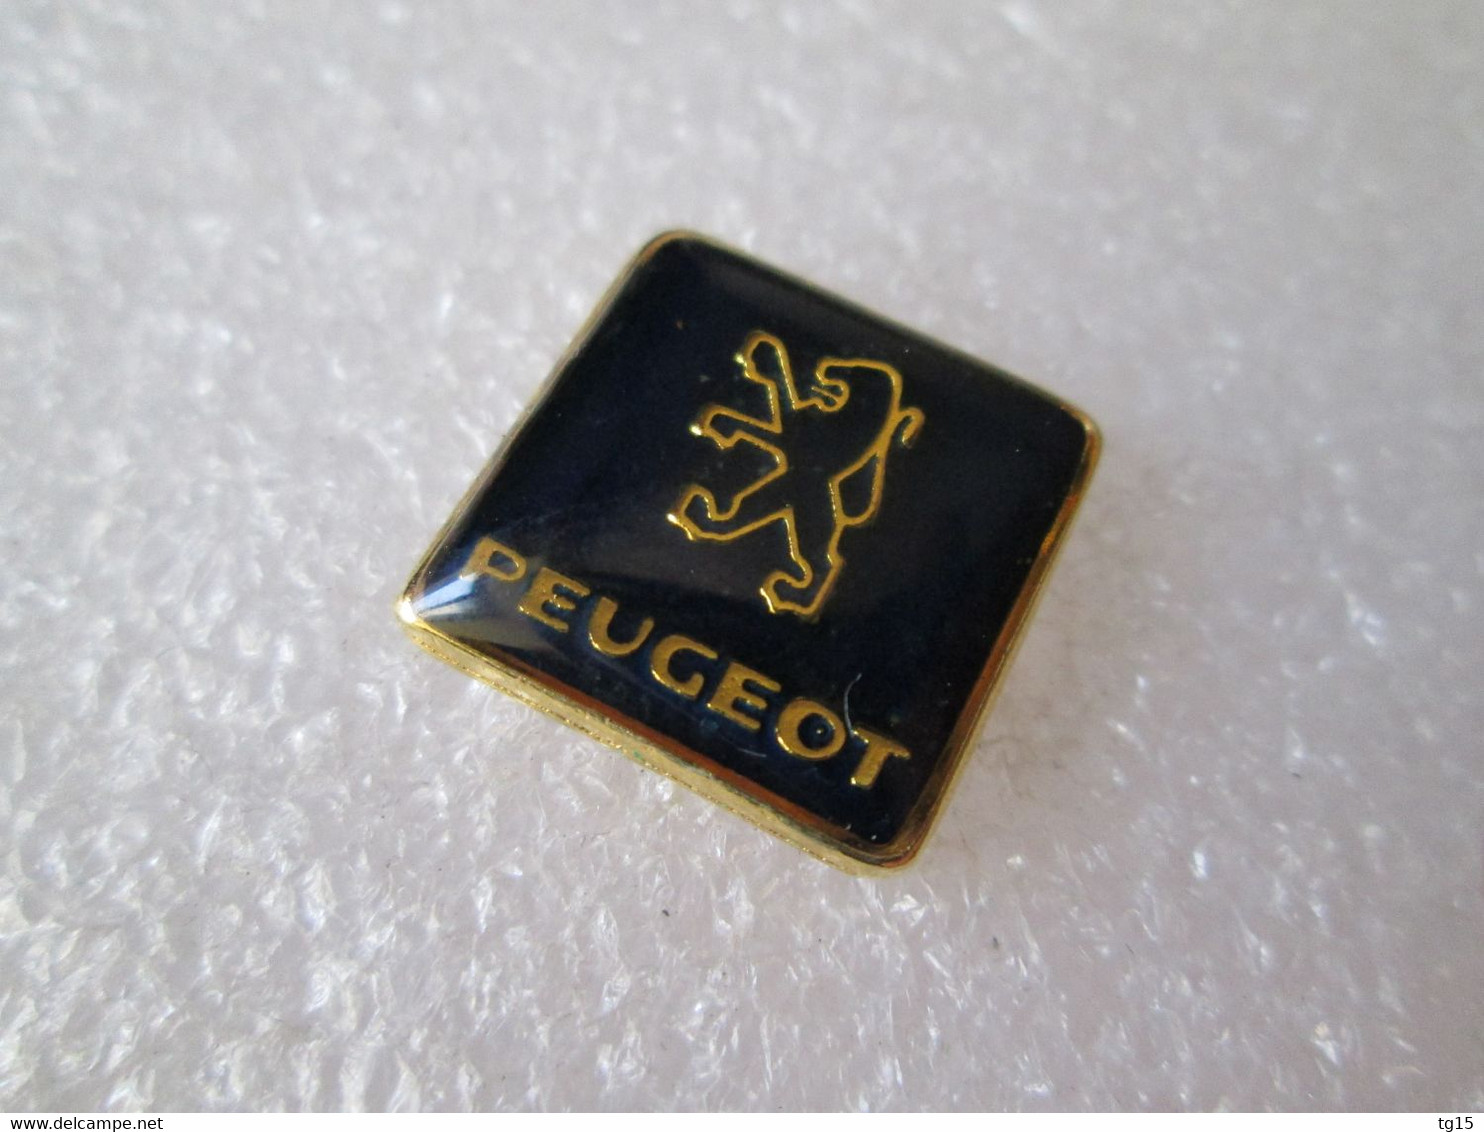 PIN'S    LOGO   PEUGEOT - Peugeot